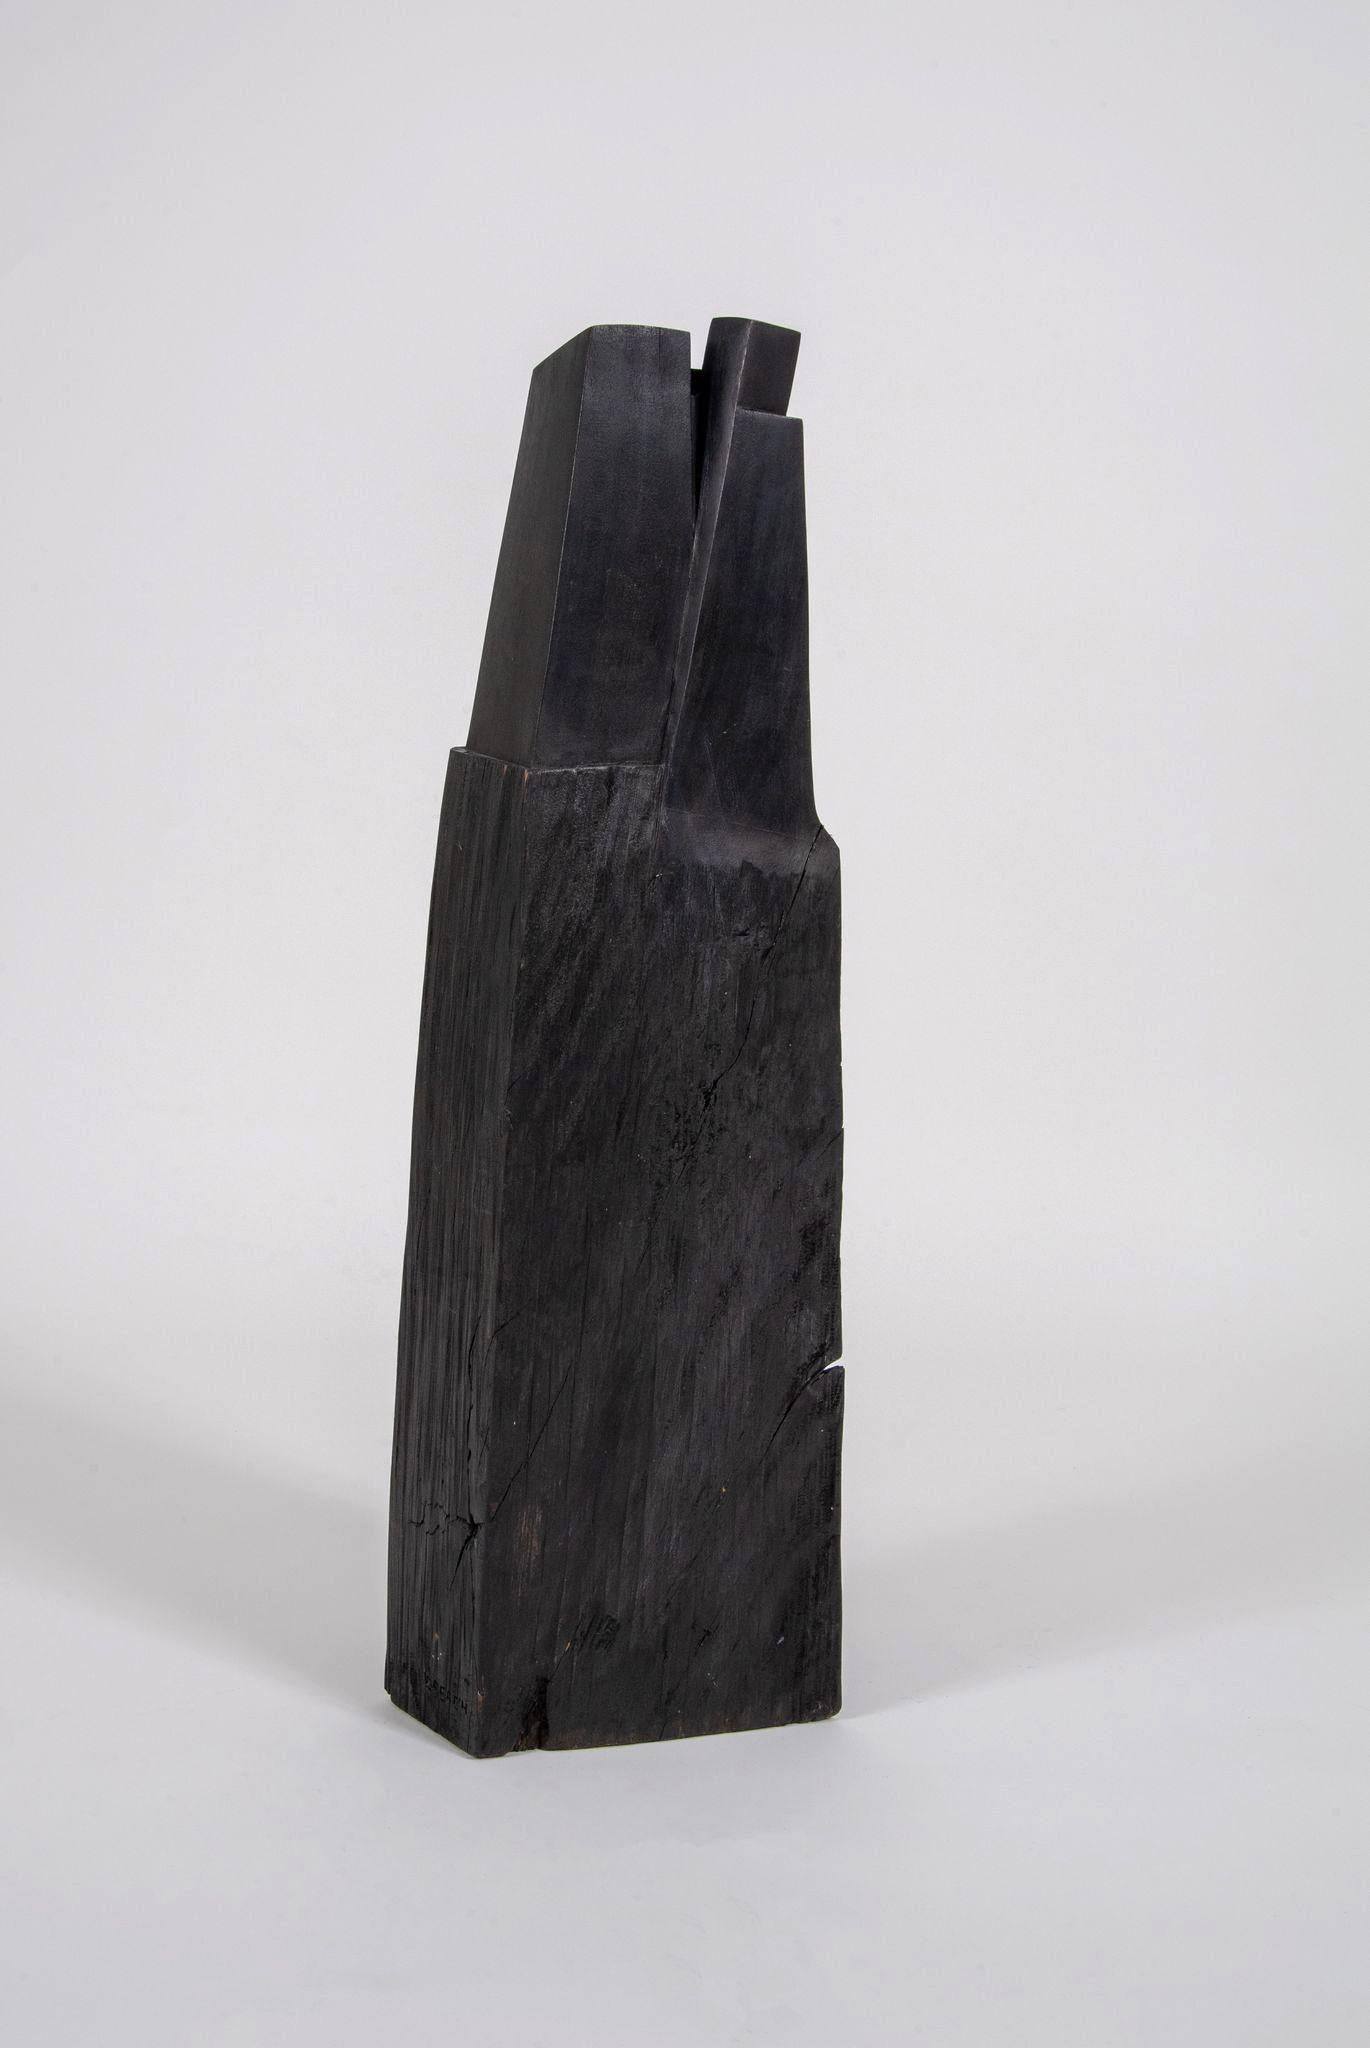 Black Wooden Sculptures 